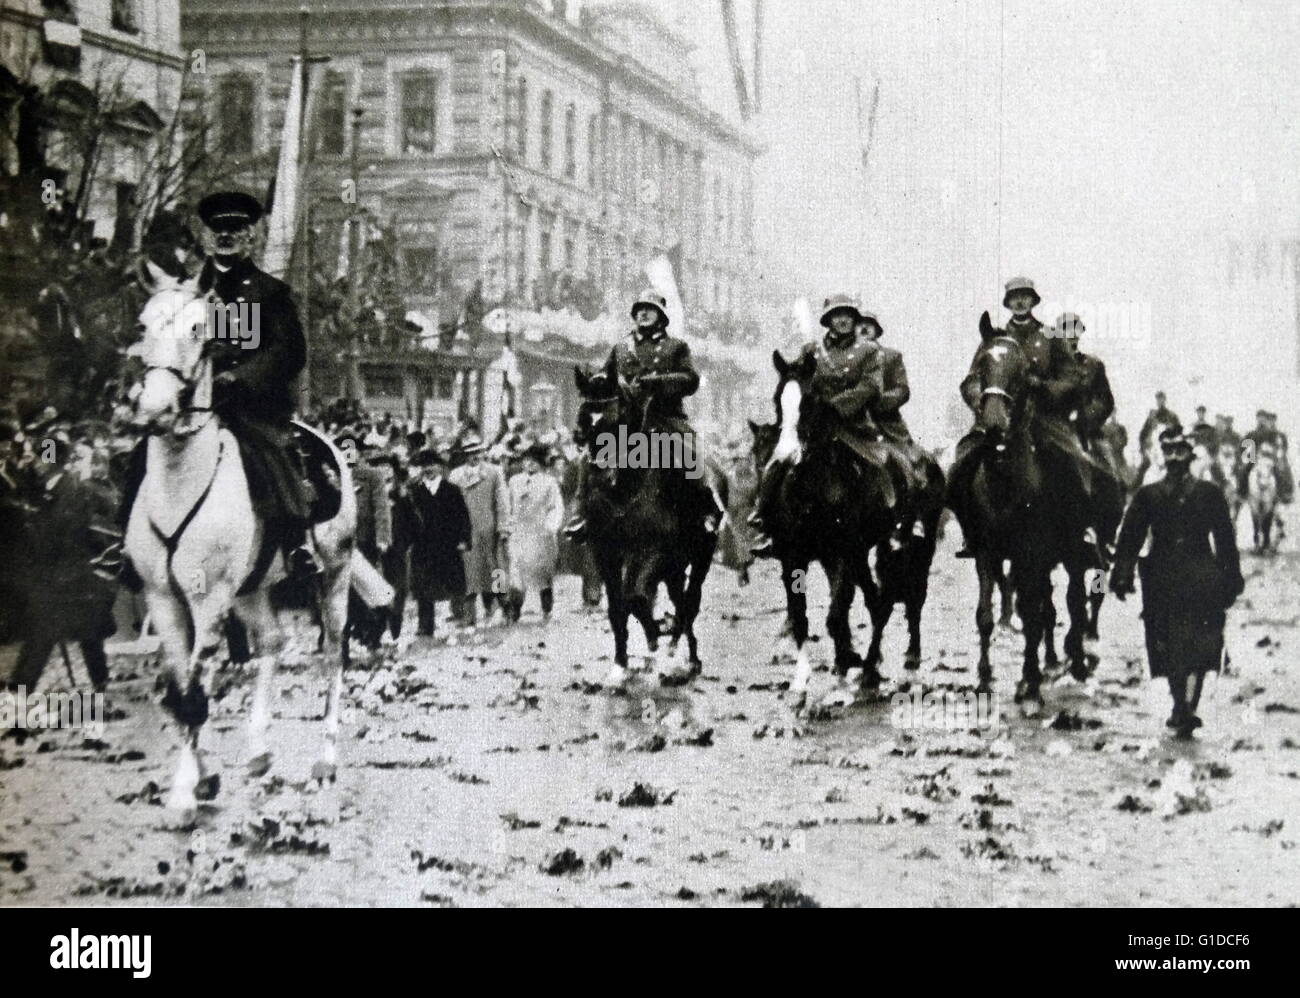 Fotodruck von Miklós Horthy de Nagybánya (1868-1957) eine ungarische Admiral und Staatsmann, der als Regent des Königreichs Ungarn zwischen Weltkriegen ich und II diente, Reiten dem Pferd durch die Straßen. Vom 20. Jahrhundert Stockfoto